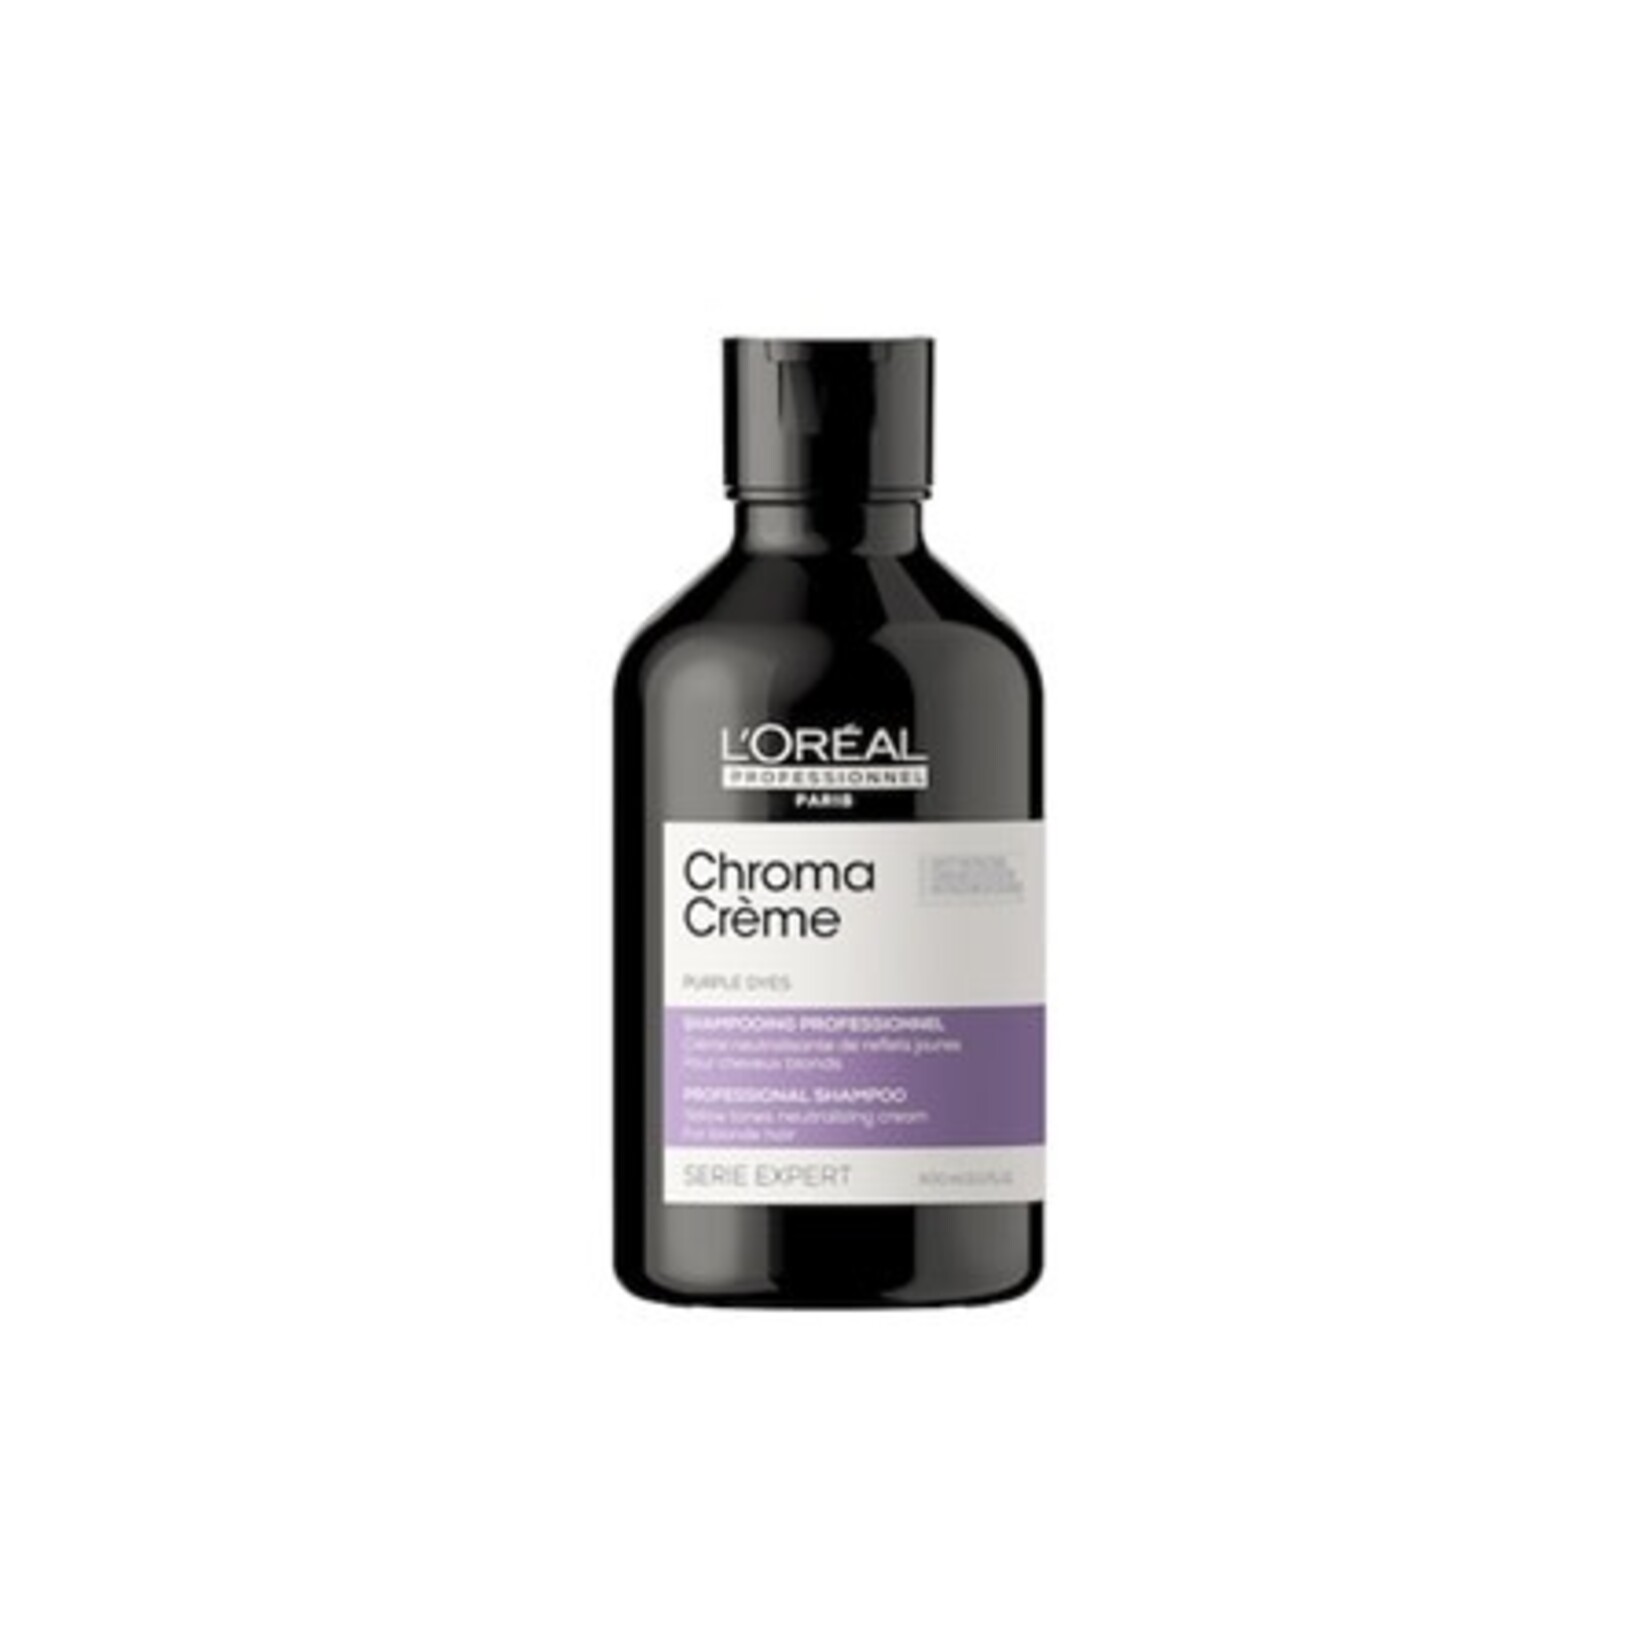 L'Oréal L'Oréal Professionnel - Chroma Creme - Shampoo Purple 300ml